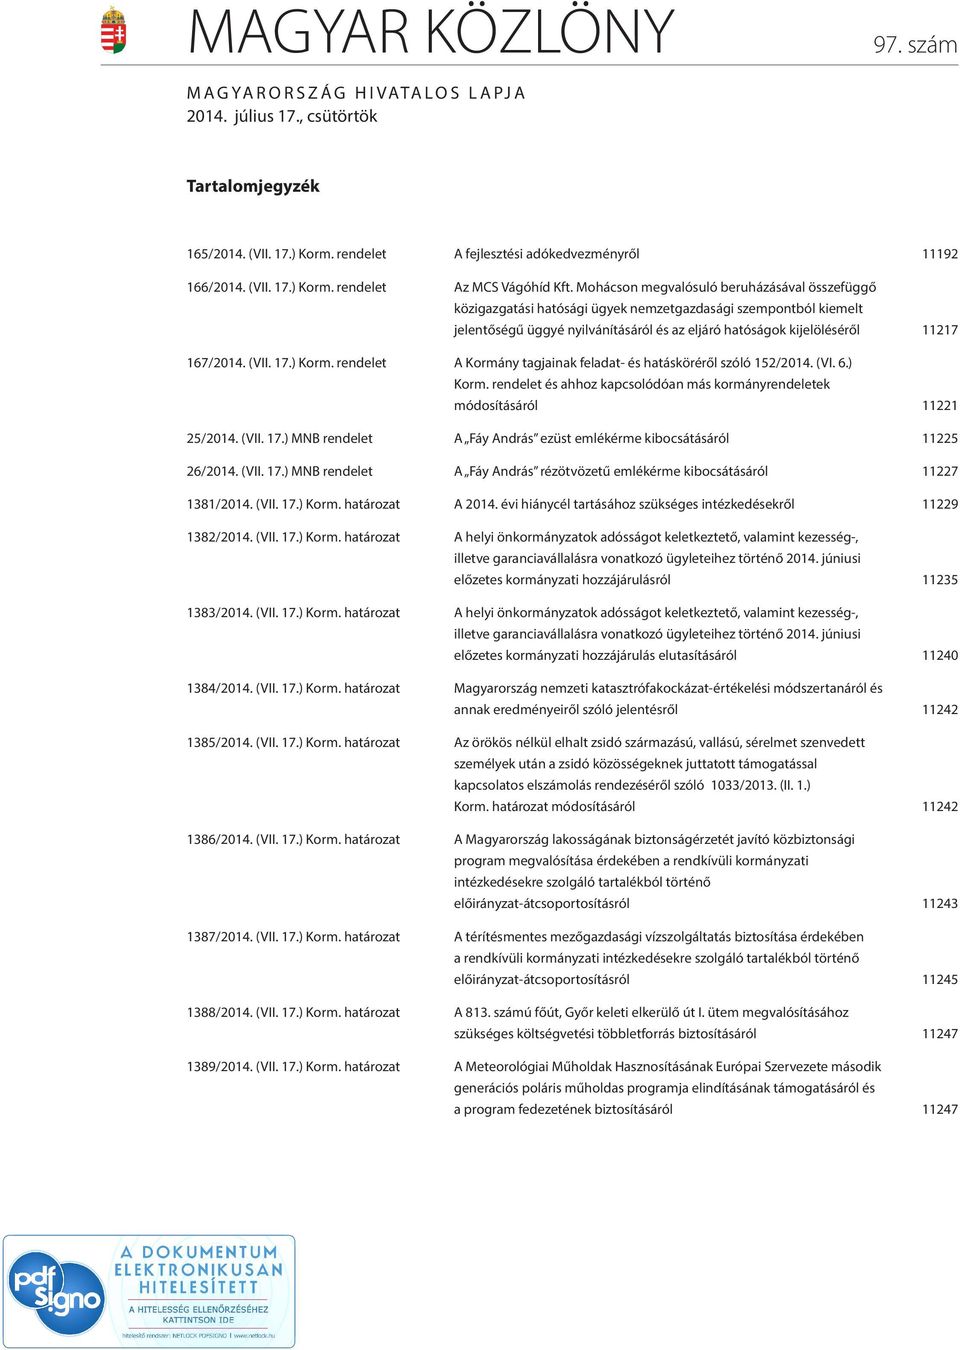 (VII. 17.) Korm. rendelet A Kormány tagjainak feladat- és hatásköréről szóló 152/2014. (VI. 6.) Korm. rendelet és ahhoz kapcsolódóan más kormányrendeletek módosításáról 11221 25/2014. (VII. 17.) MNB rendelet A Fáy András ezüst emlékérme kibocsátásáról 11225 26/2014.